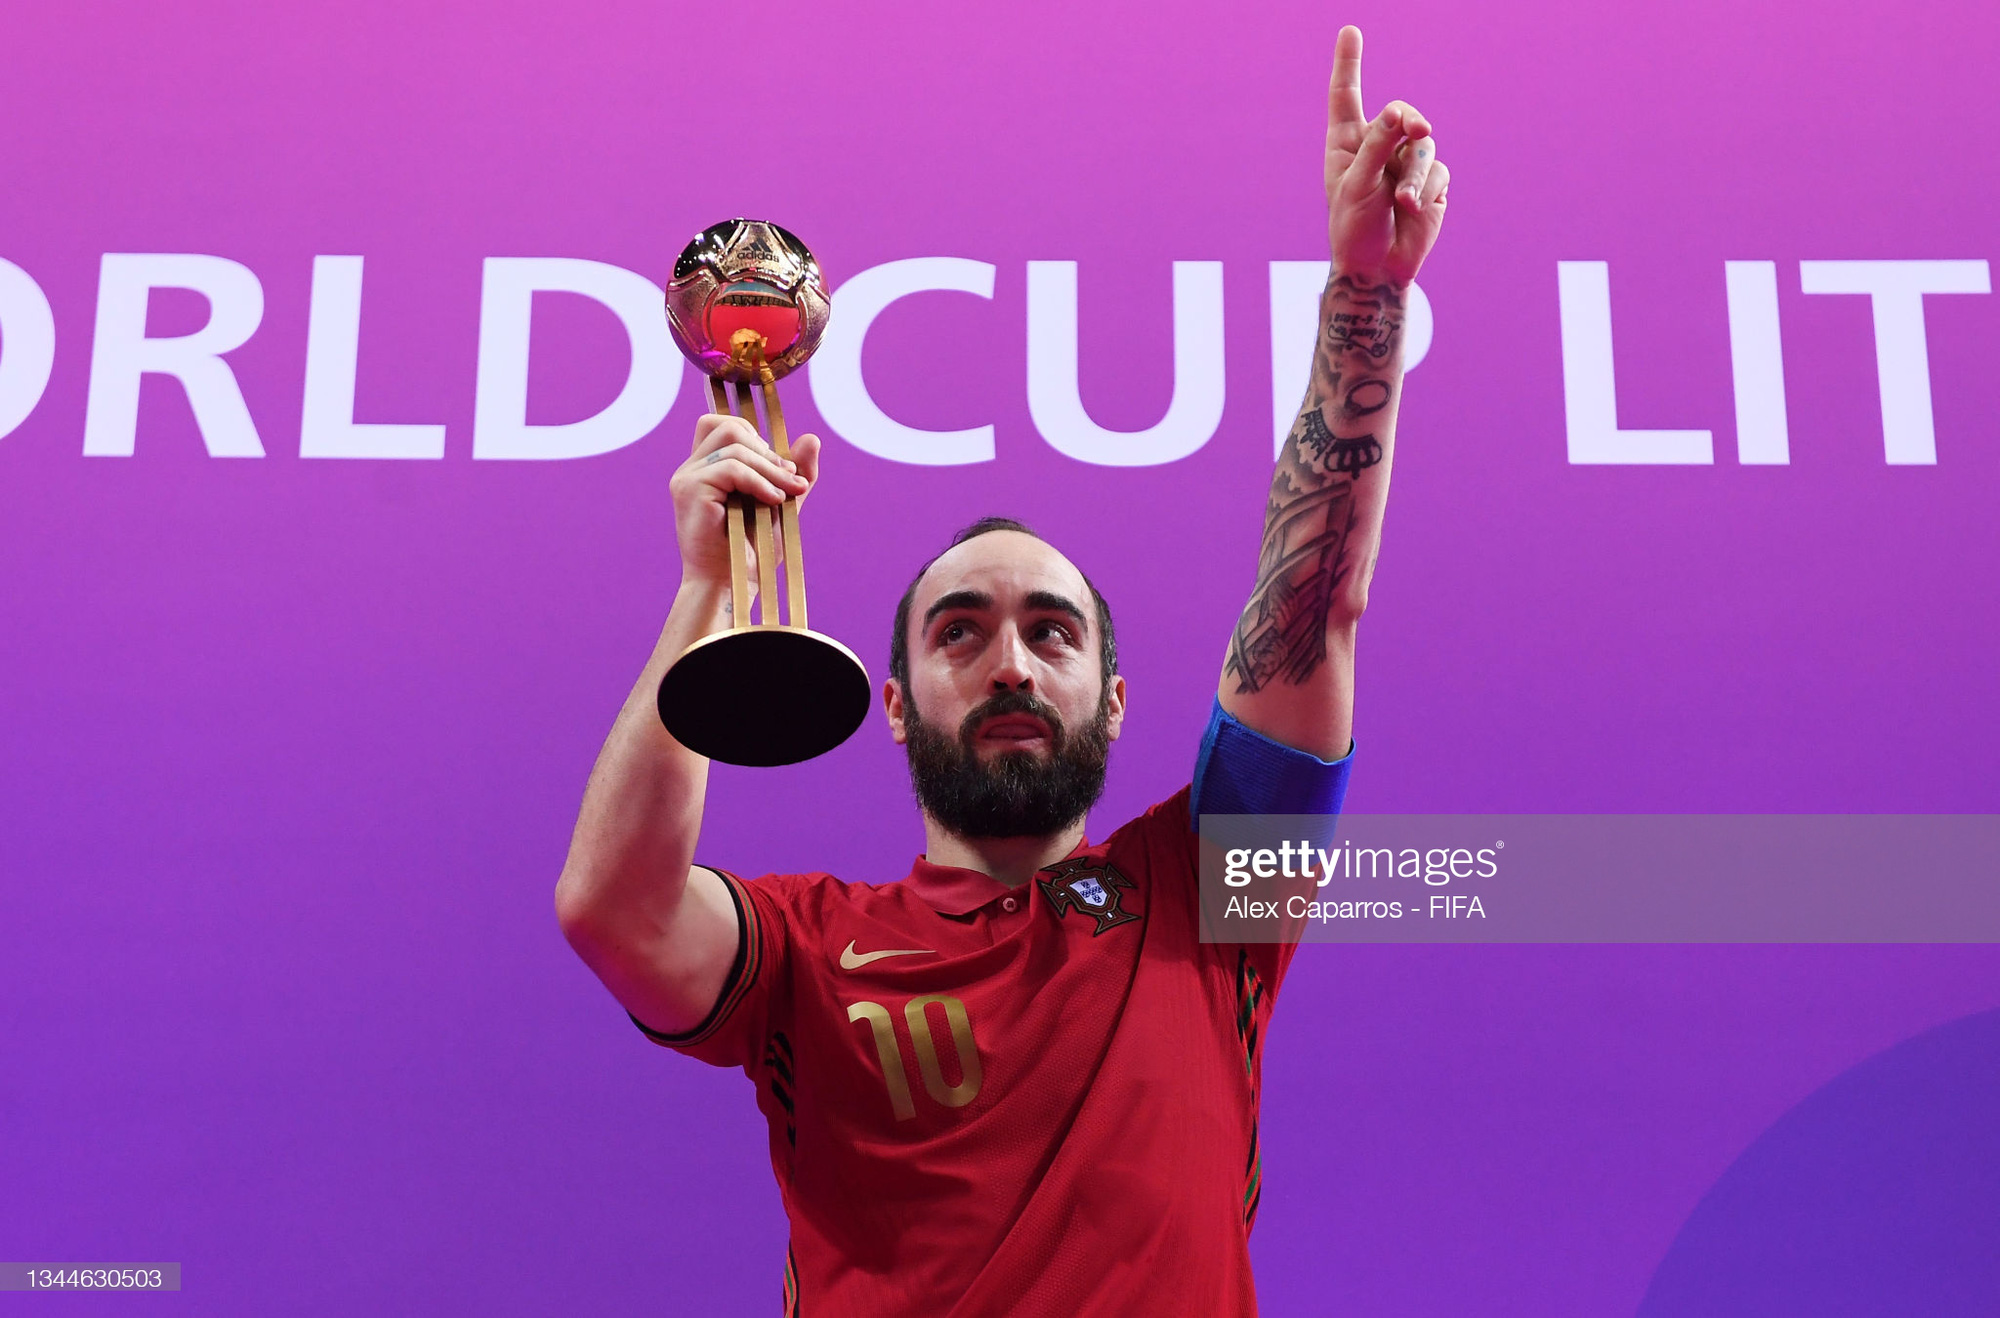 Chùm ảnh: Hai cảm xúc trái ngược trong trận chung kết Futsal World Cup 2021 - Ảnh 9.